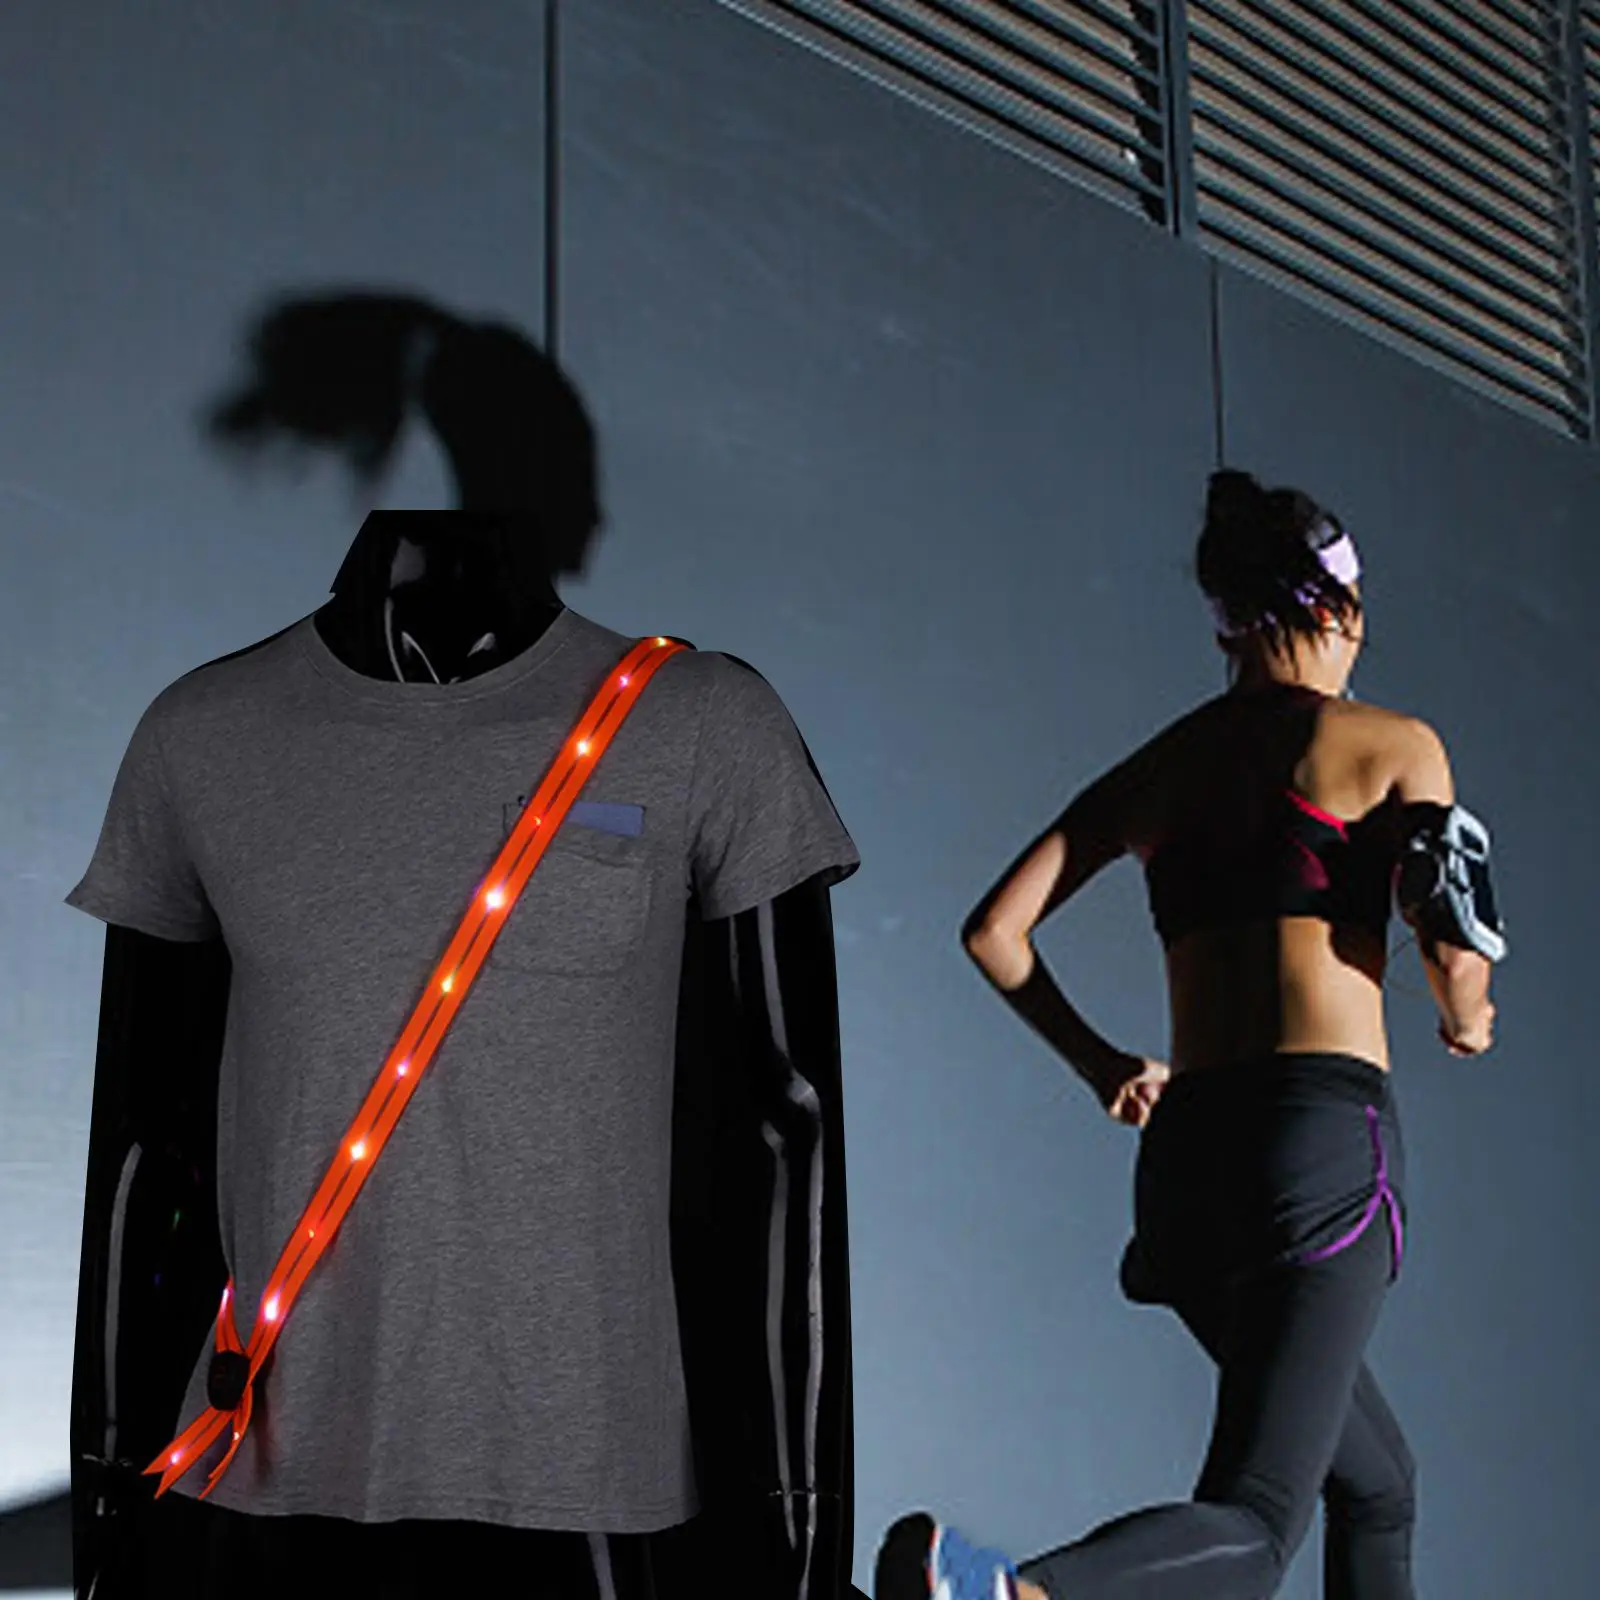 LED Lights Belt Rechargeable Running Gear Long Distance Visible Shoulder Straps for Hiking Traffic Outdoor Jogging Men Women